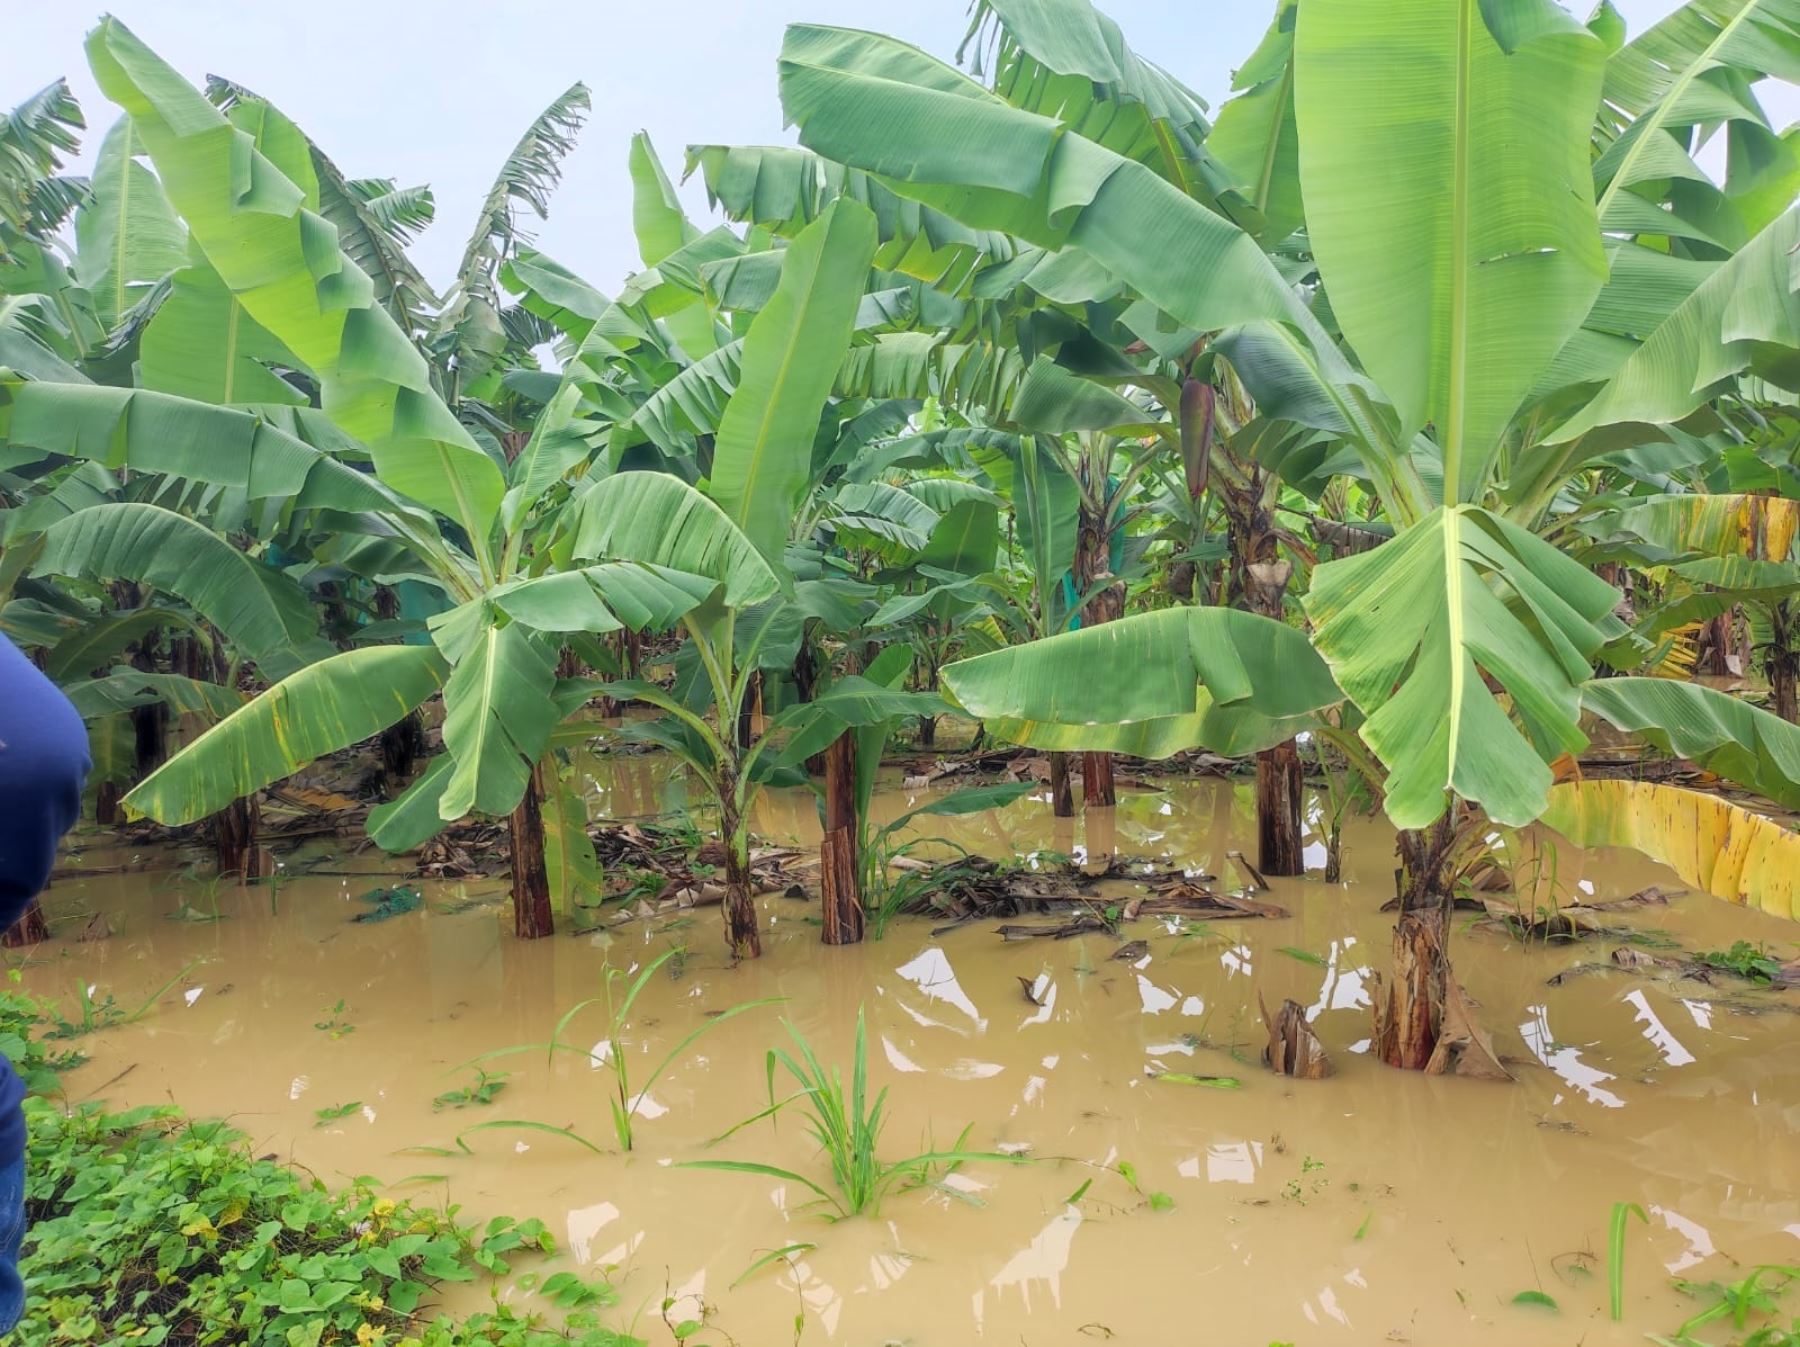 Los productores de banano orgánico de Tumbes son los más afectados por las lluvias intensas y desborde de ríos que se registraron en esta región e inundaron sus cultivos. Foto: Milagros Rodríguez